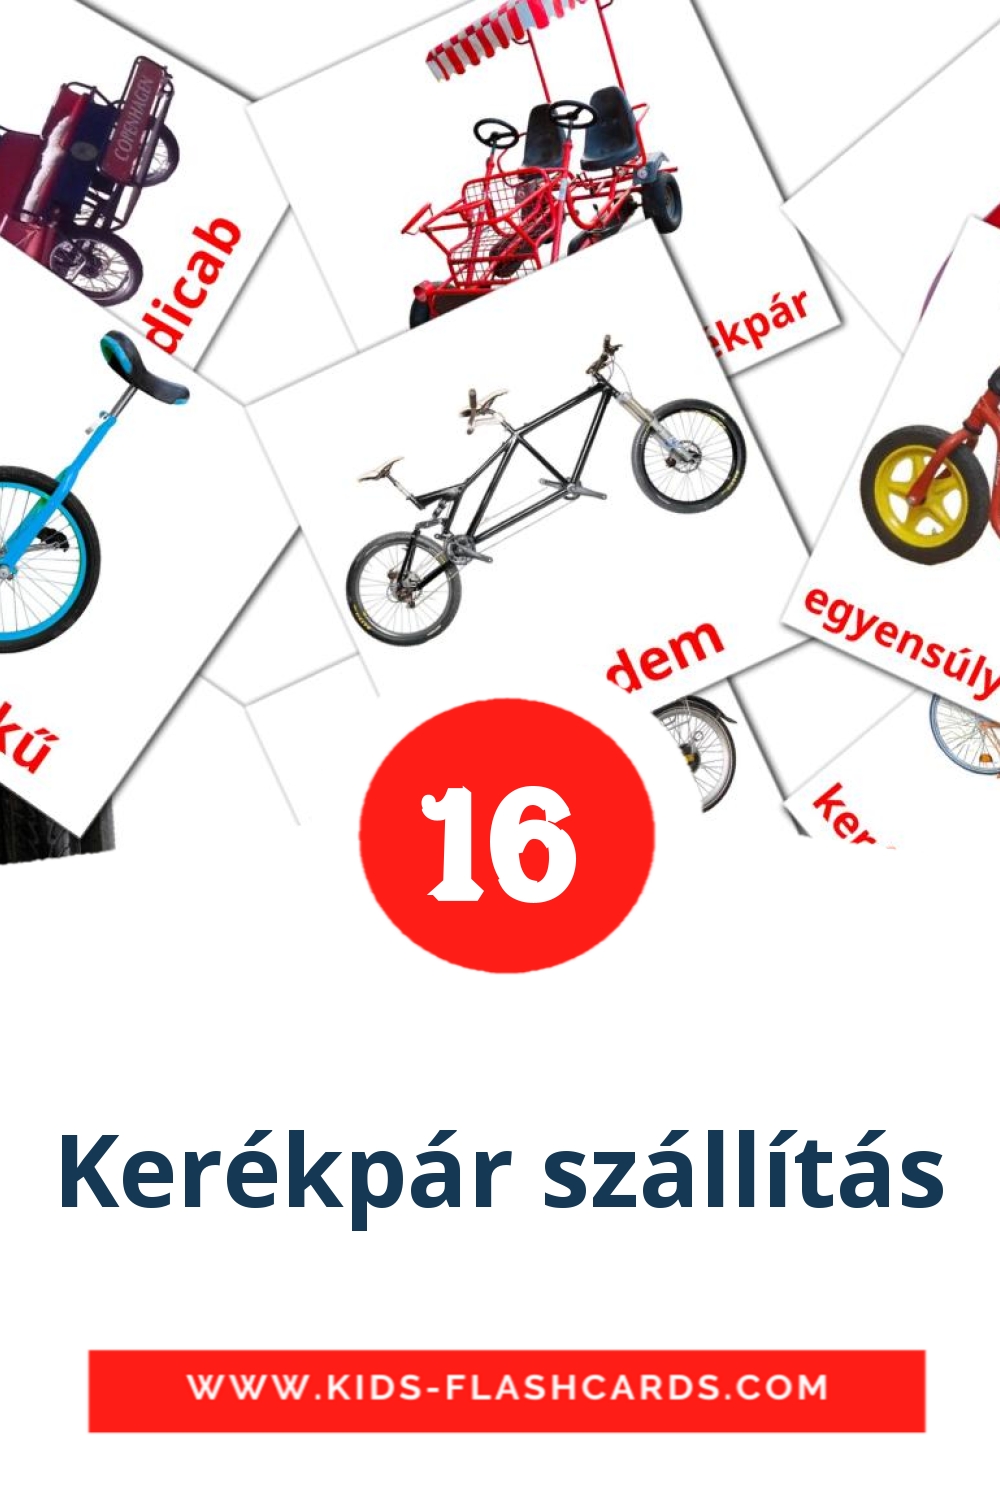 16 Kerékpár szállítás Bildkarten für den Kindergarten auf Ungarisch